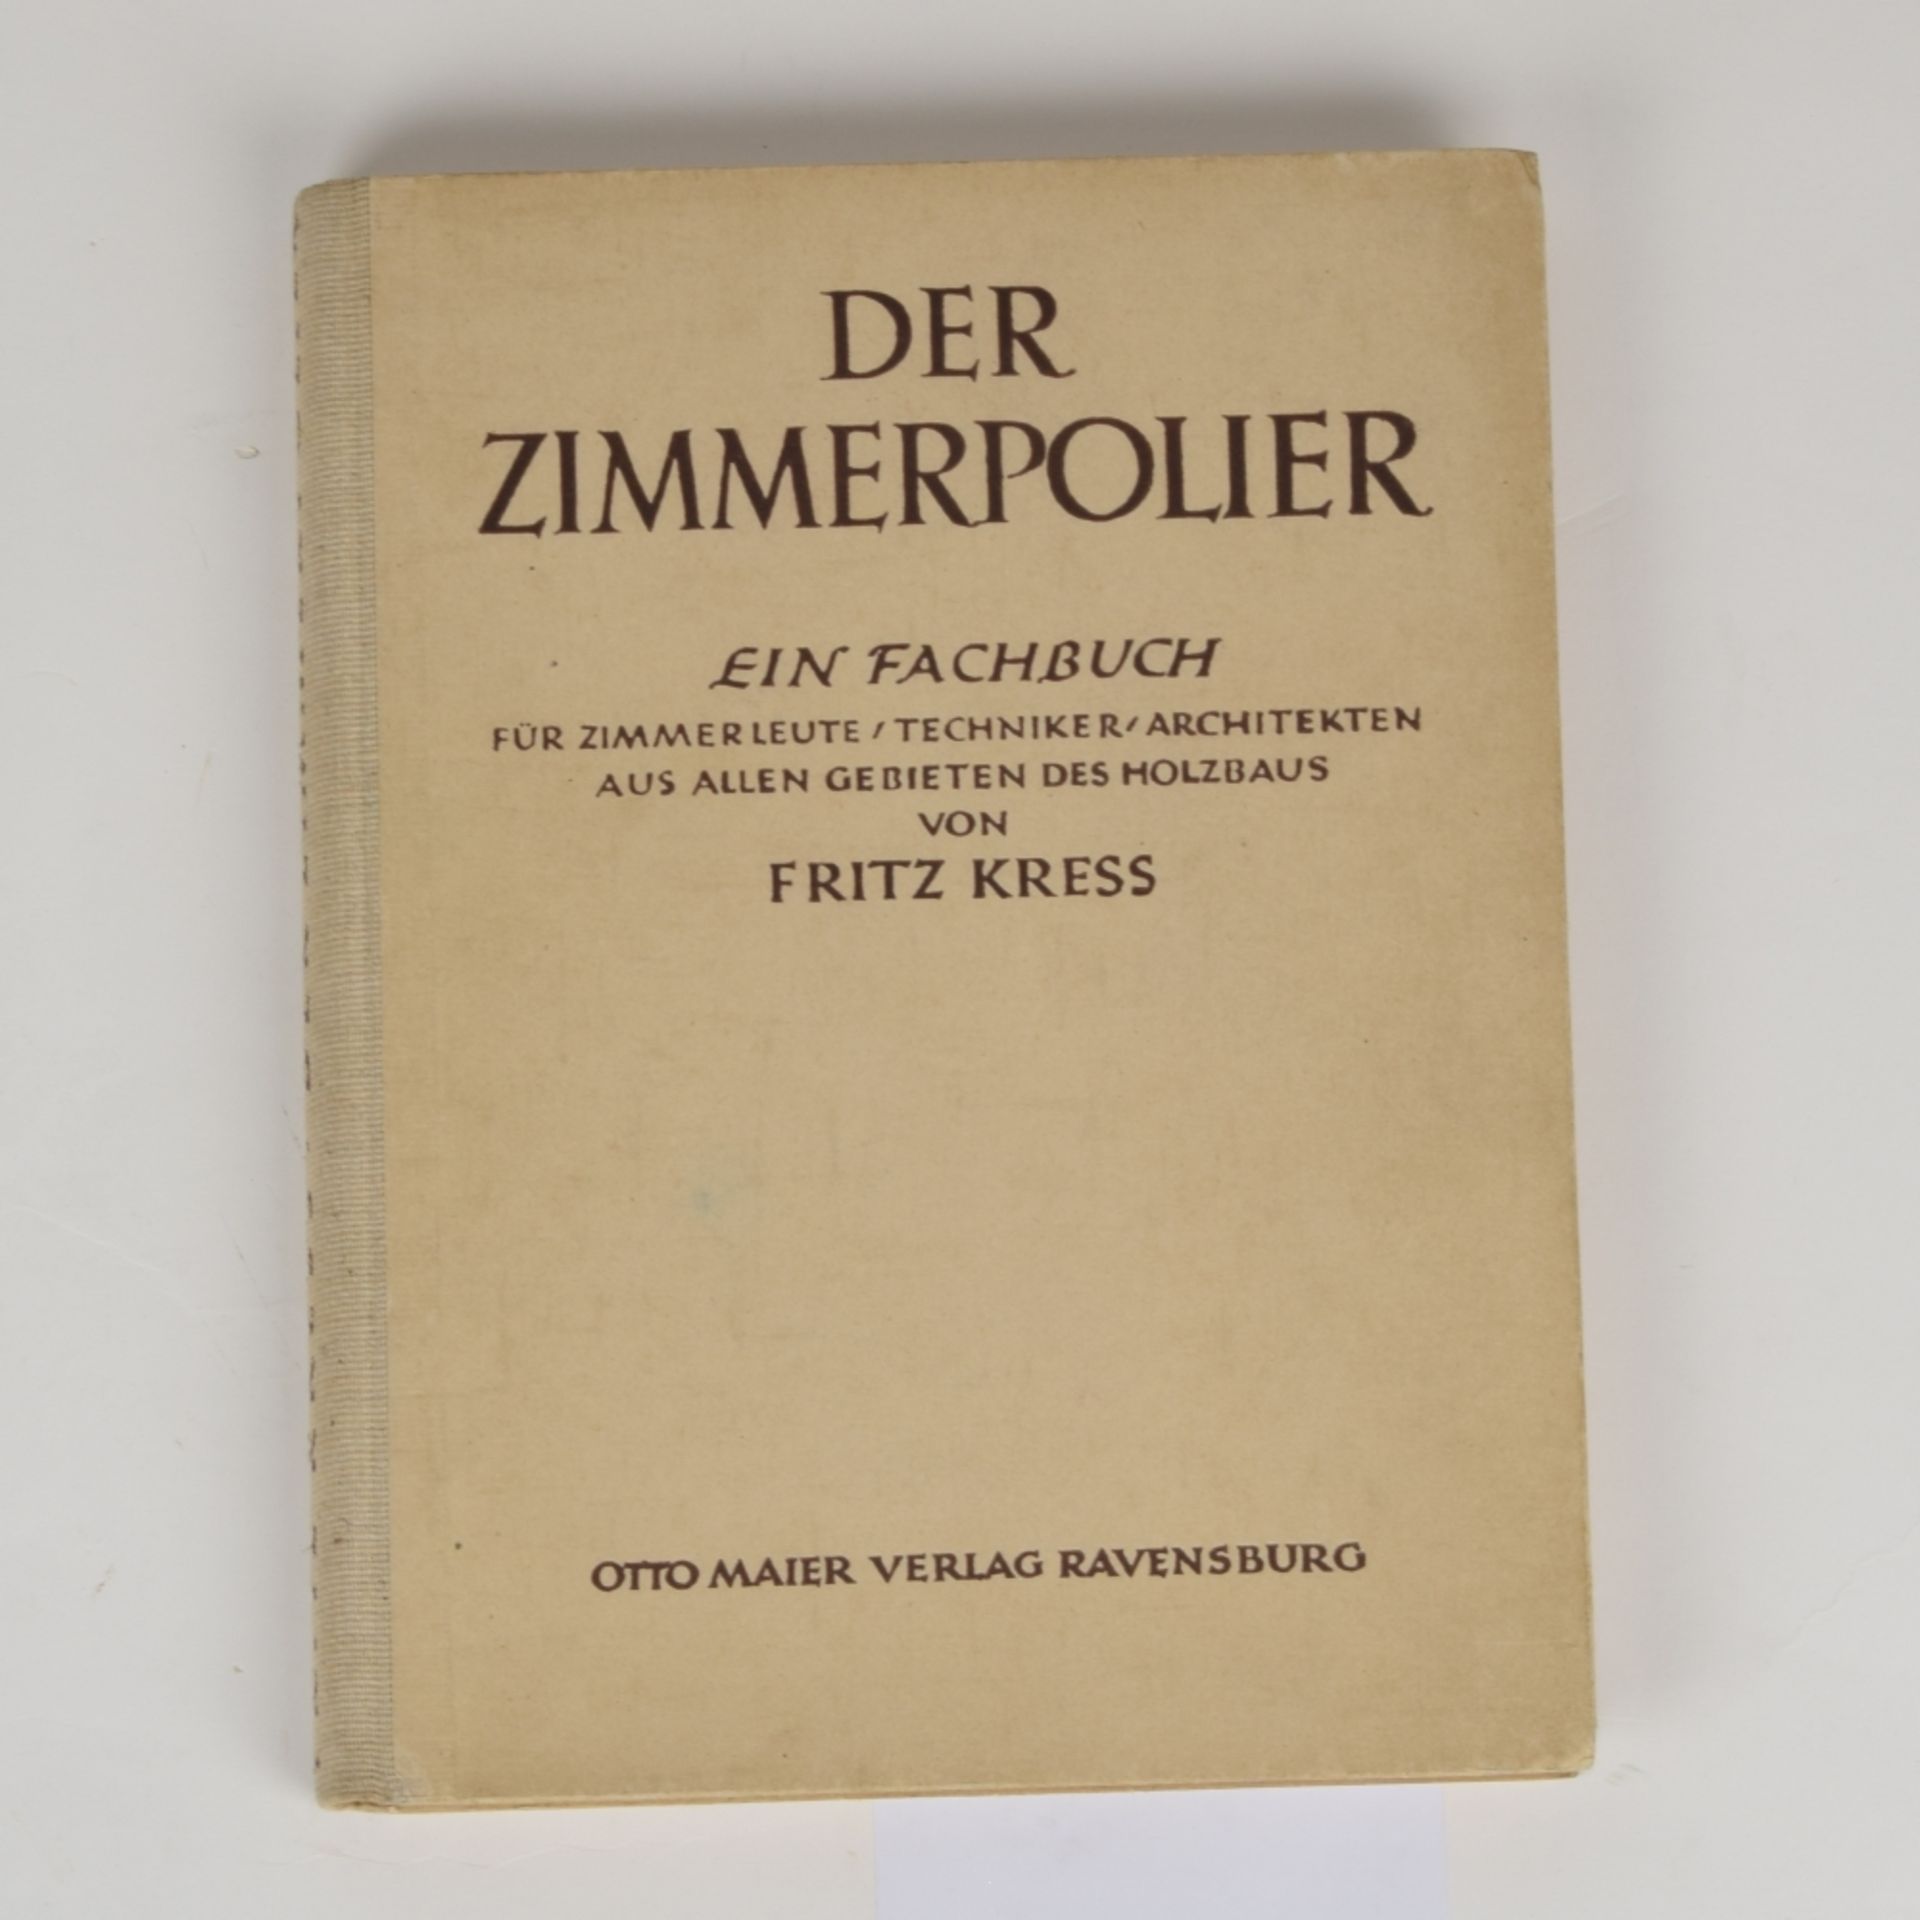 DER ZIMMERPOLIER - Image 2 of 3